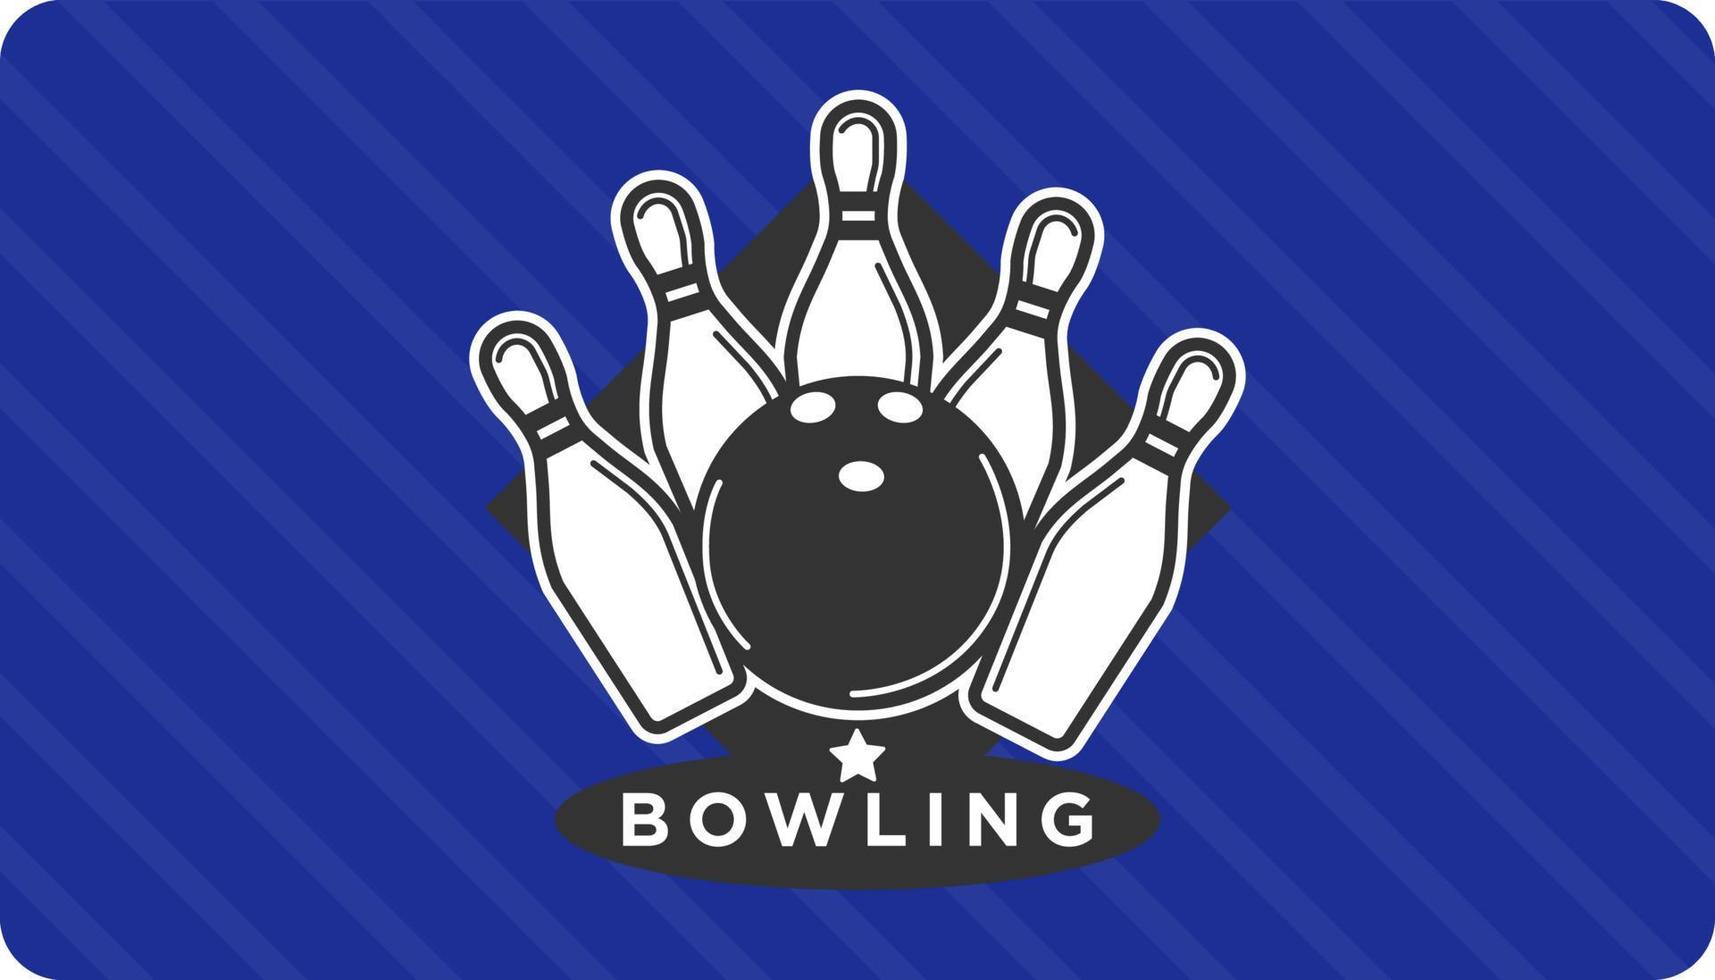 bowling klubb, spel för rekreation eller sporter vektor